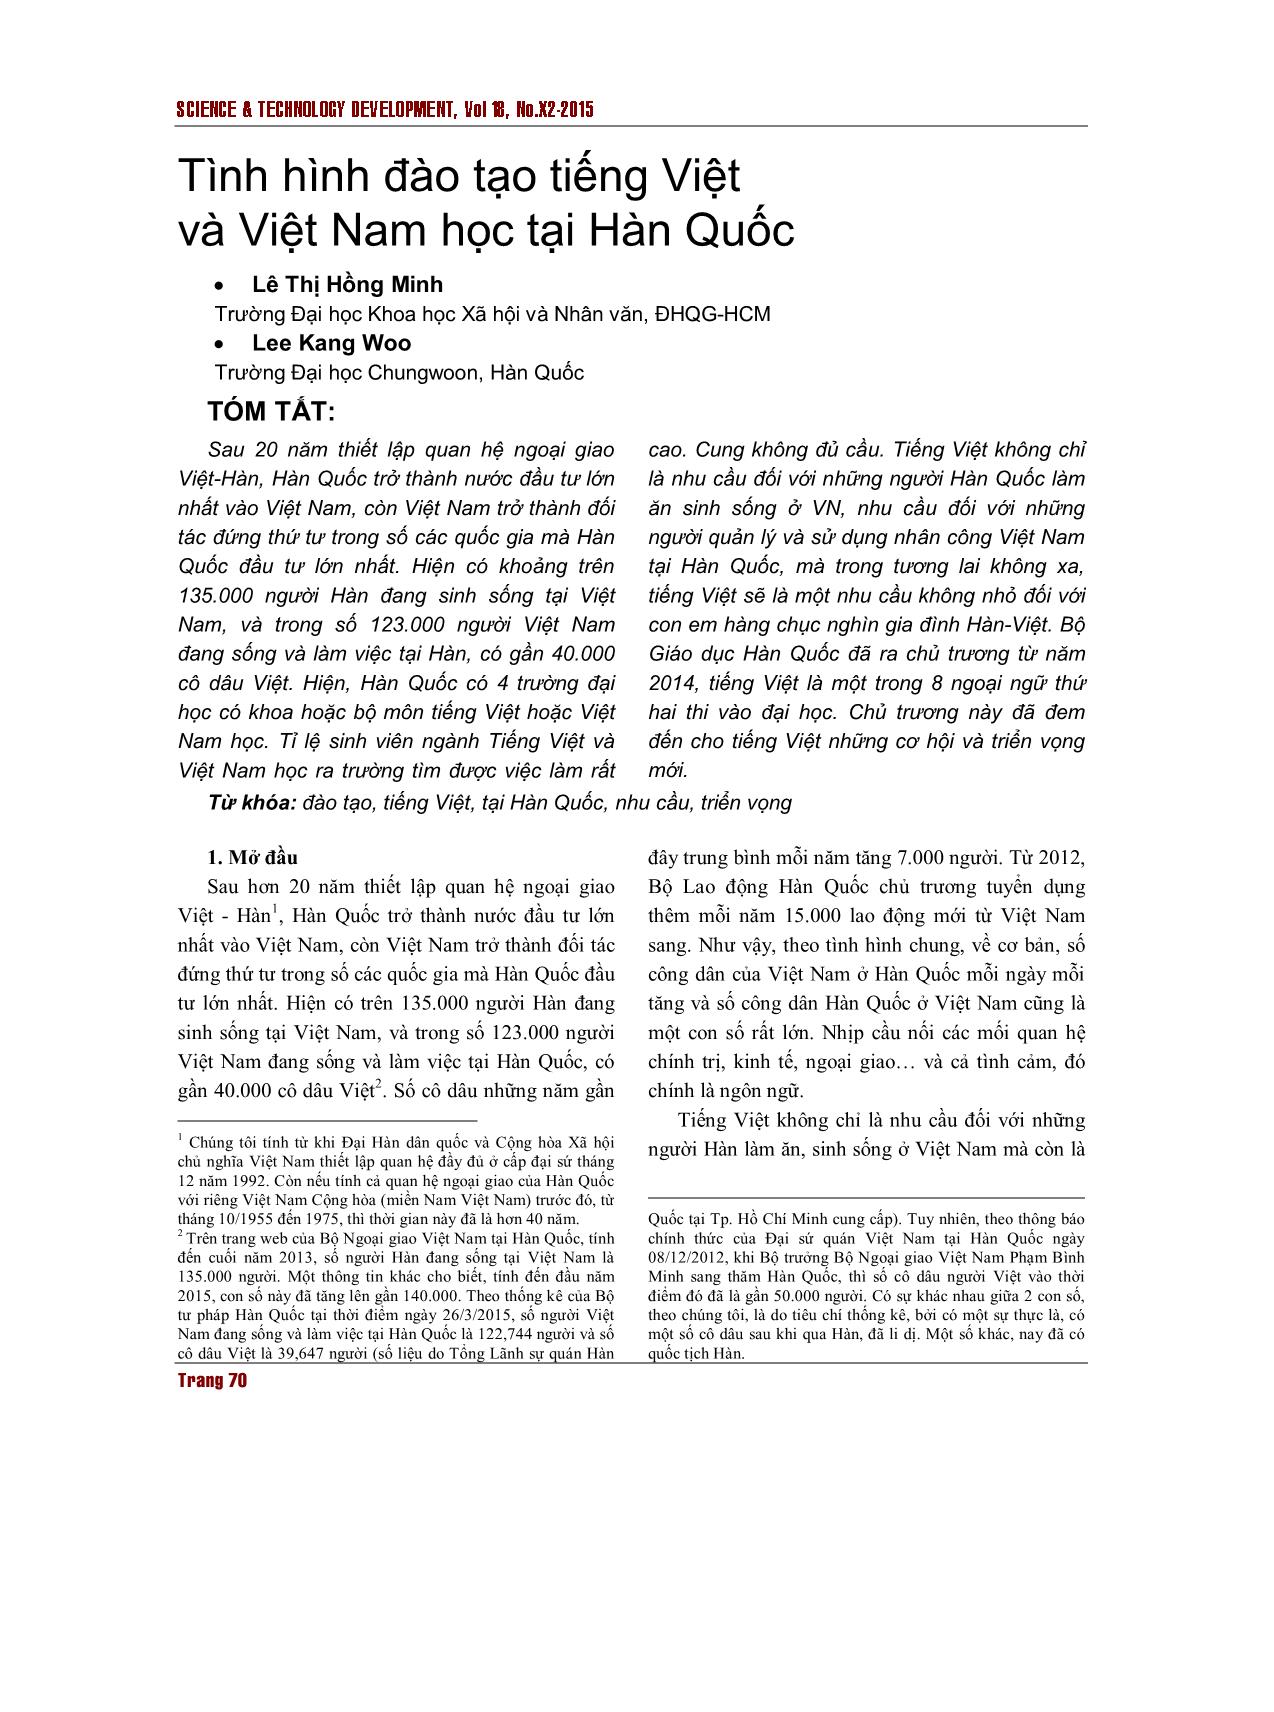 Tình hình đào tạo tiếng Việt và Việt Nam học tại Hàn Quốc trang 1